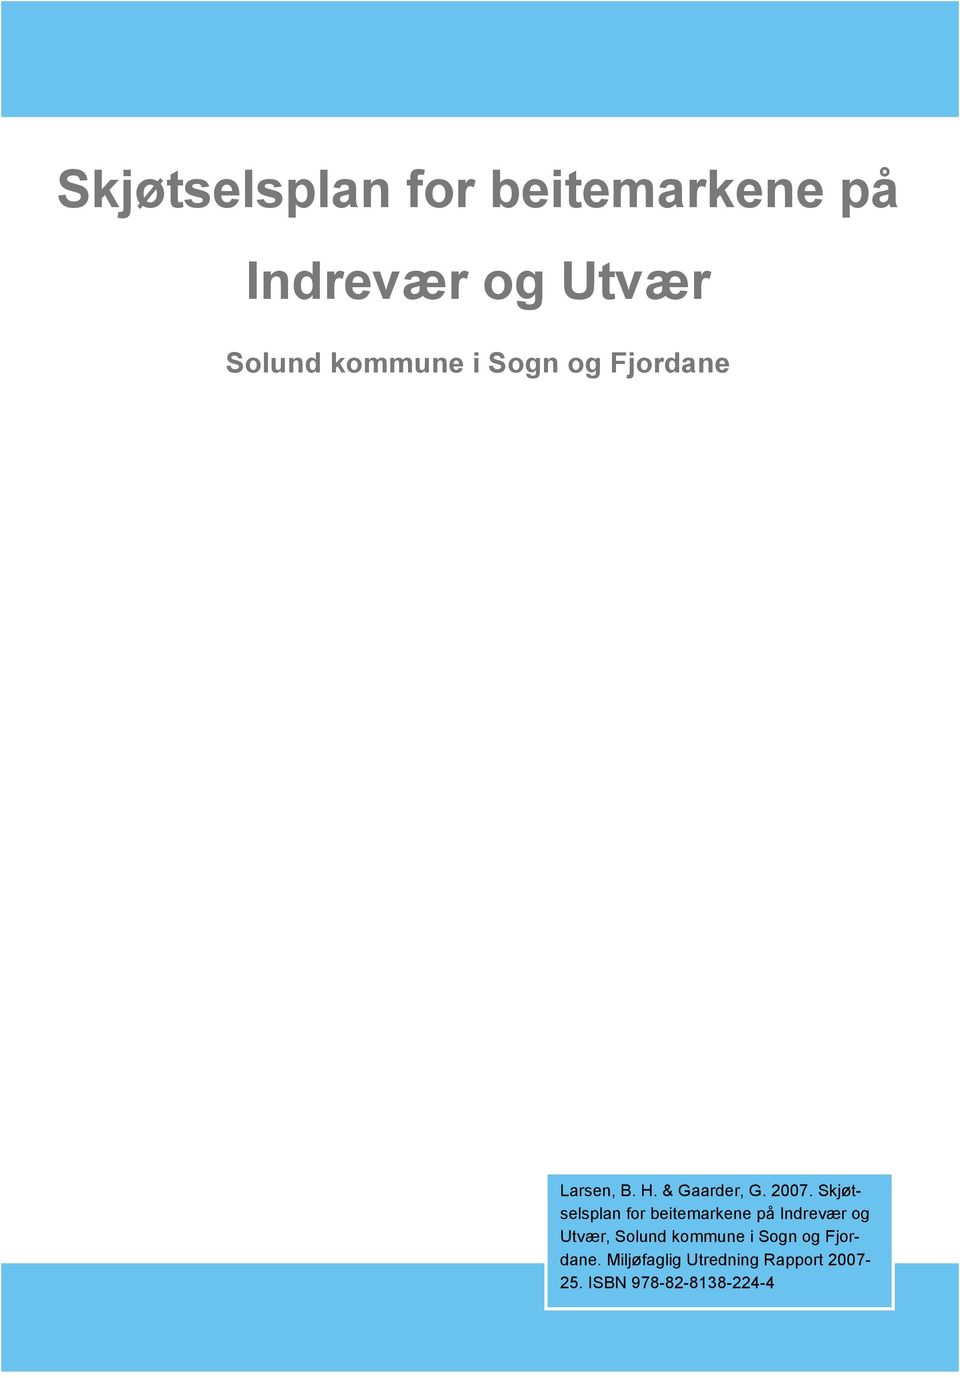 Skjøtselsplan for beitemarkene på Indrevær og Utvær, Solund kommune i